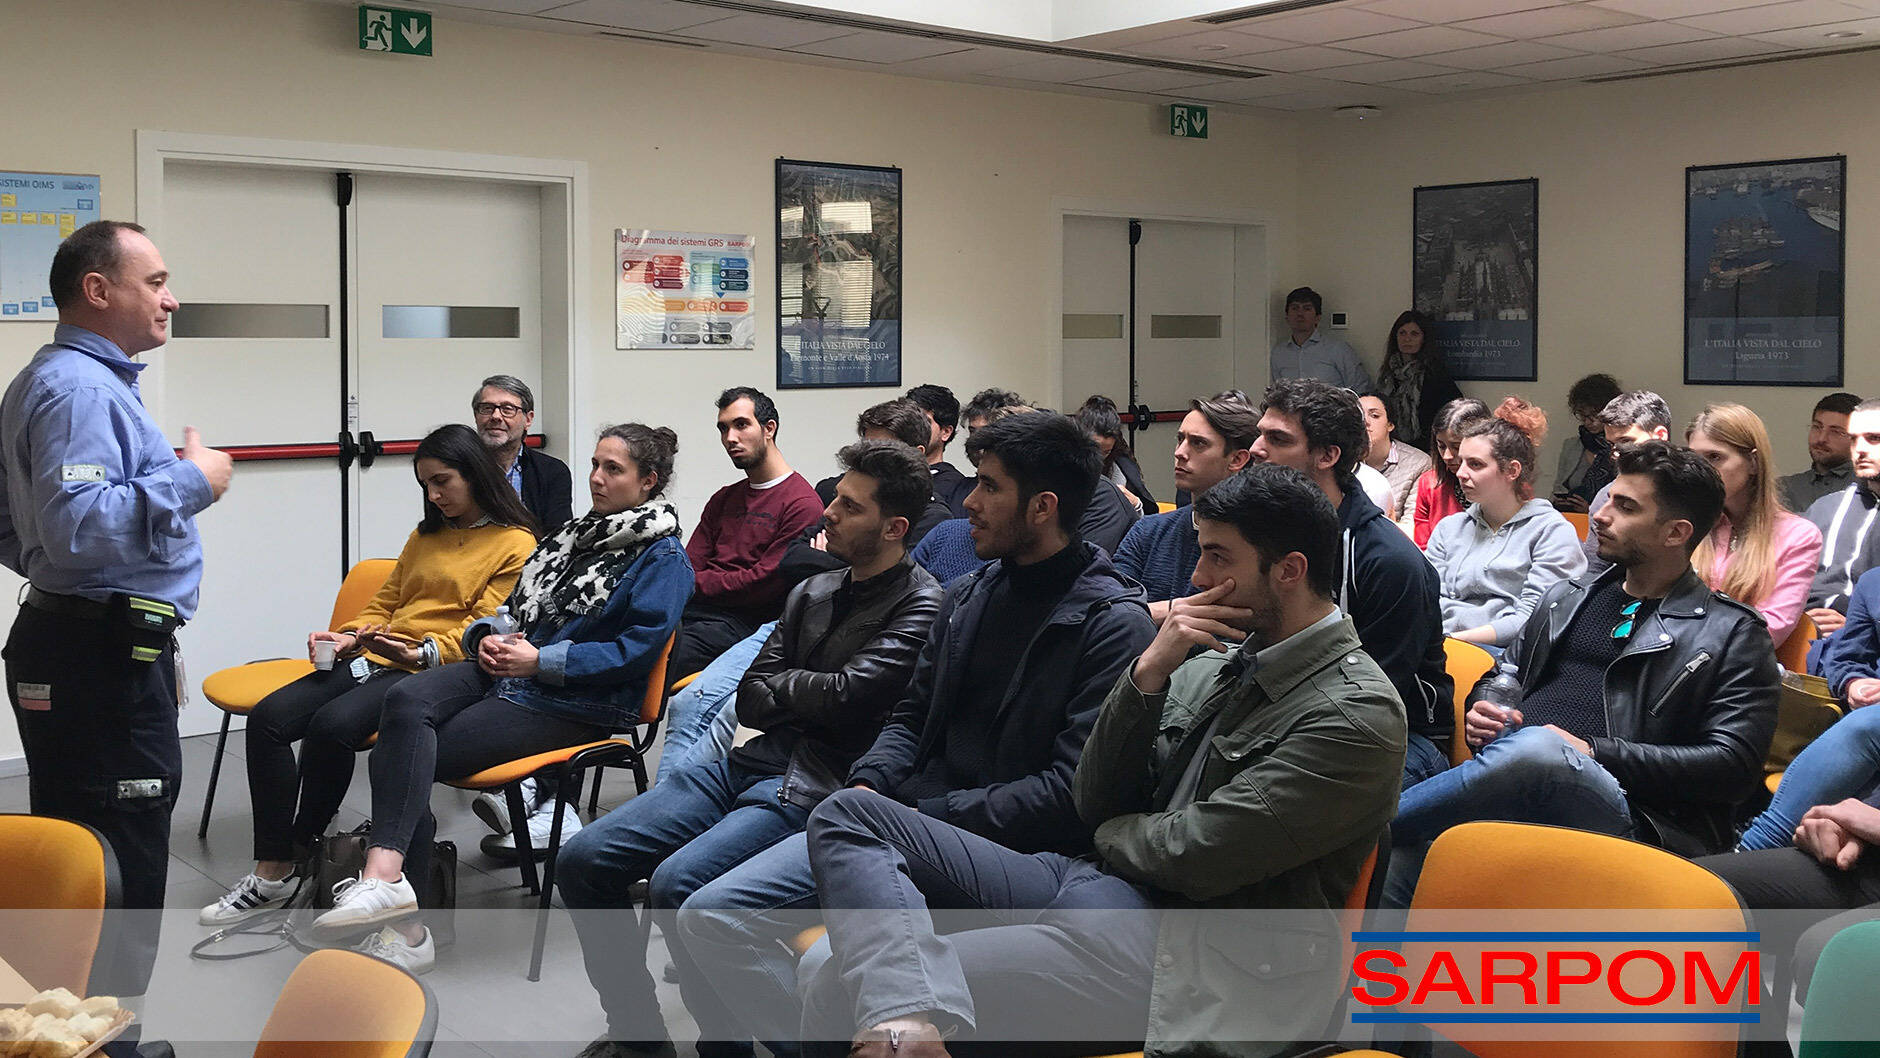 La SARPOM incontra gli studenti delluniversit di Genova